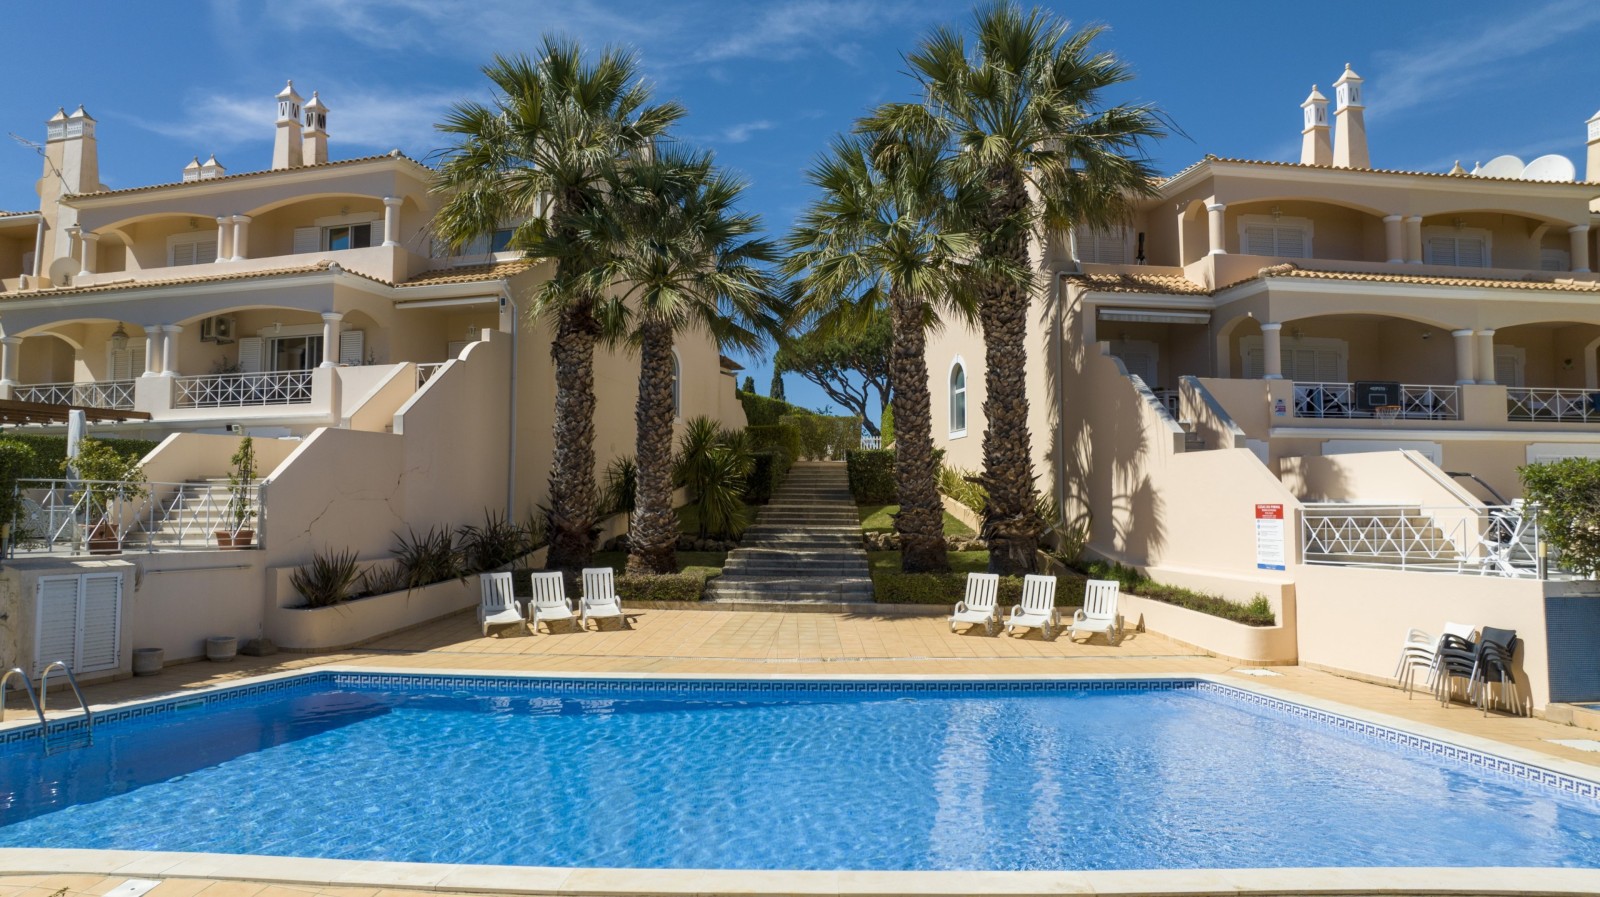 Villa adosada de 4 dormitorios, con piscina, en venta en Vilamoura, Algarve_237490